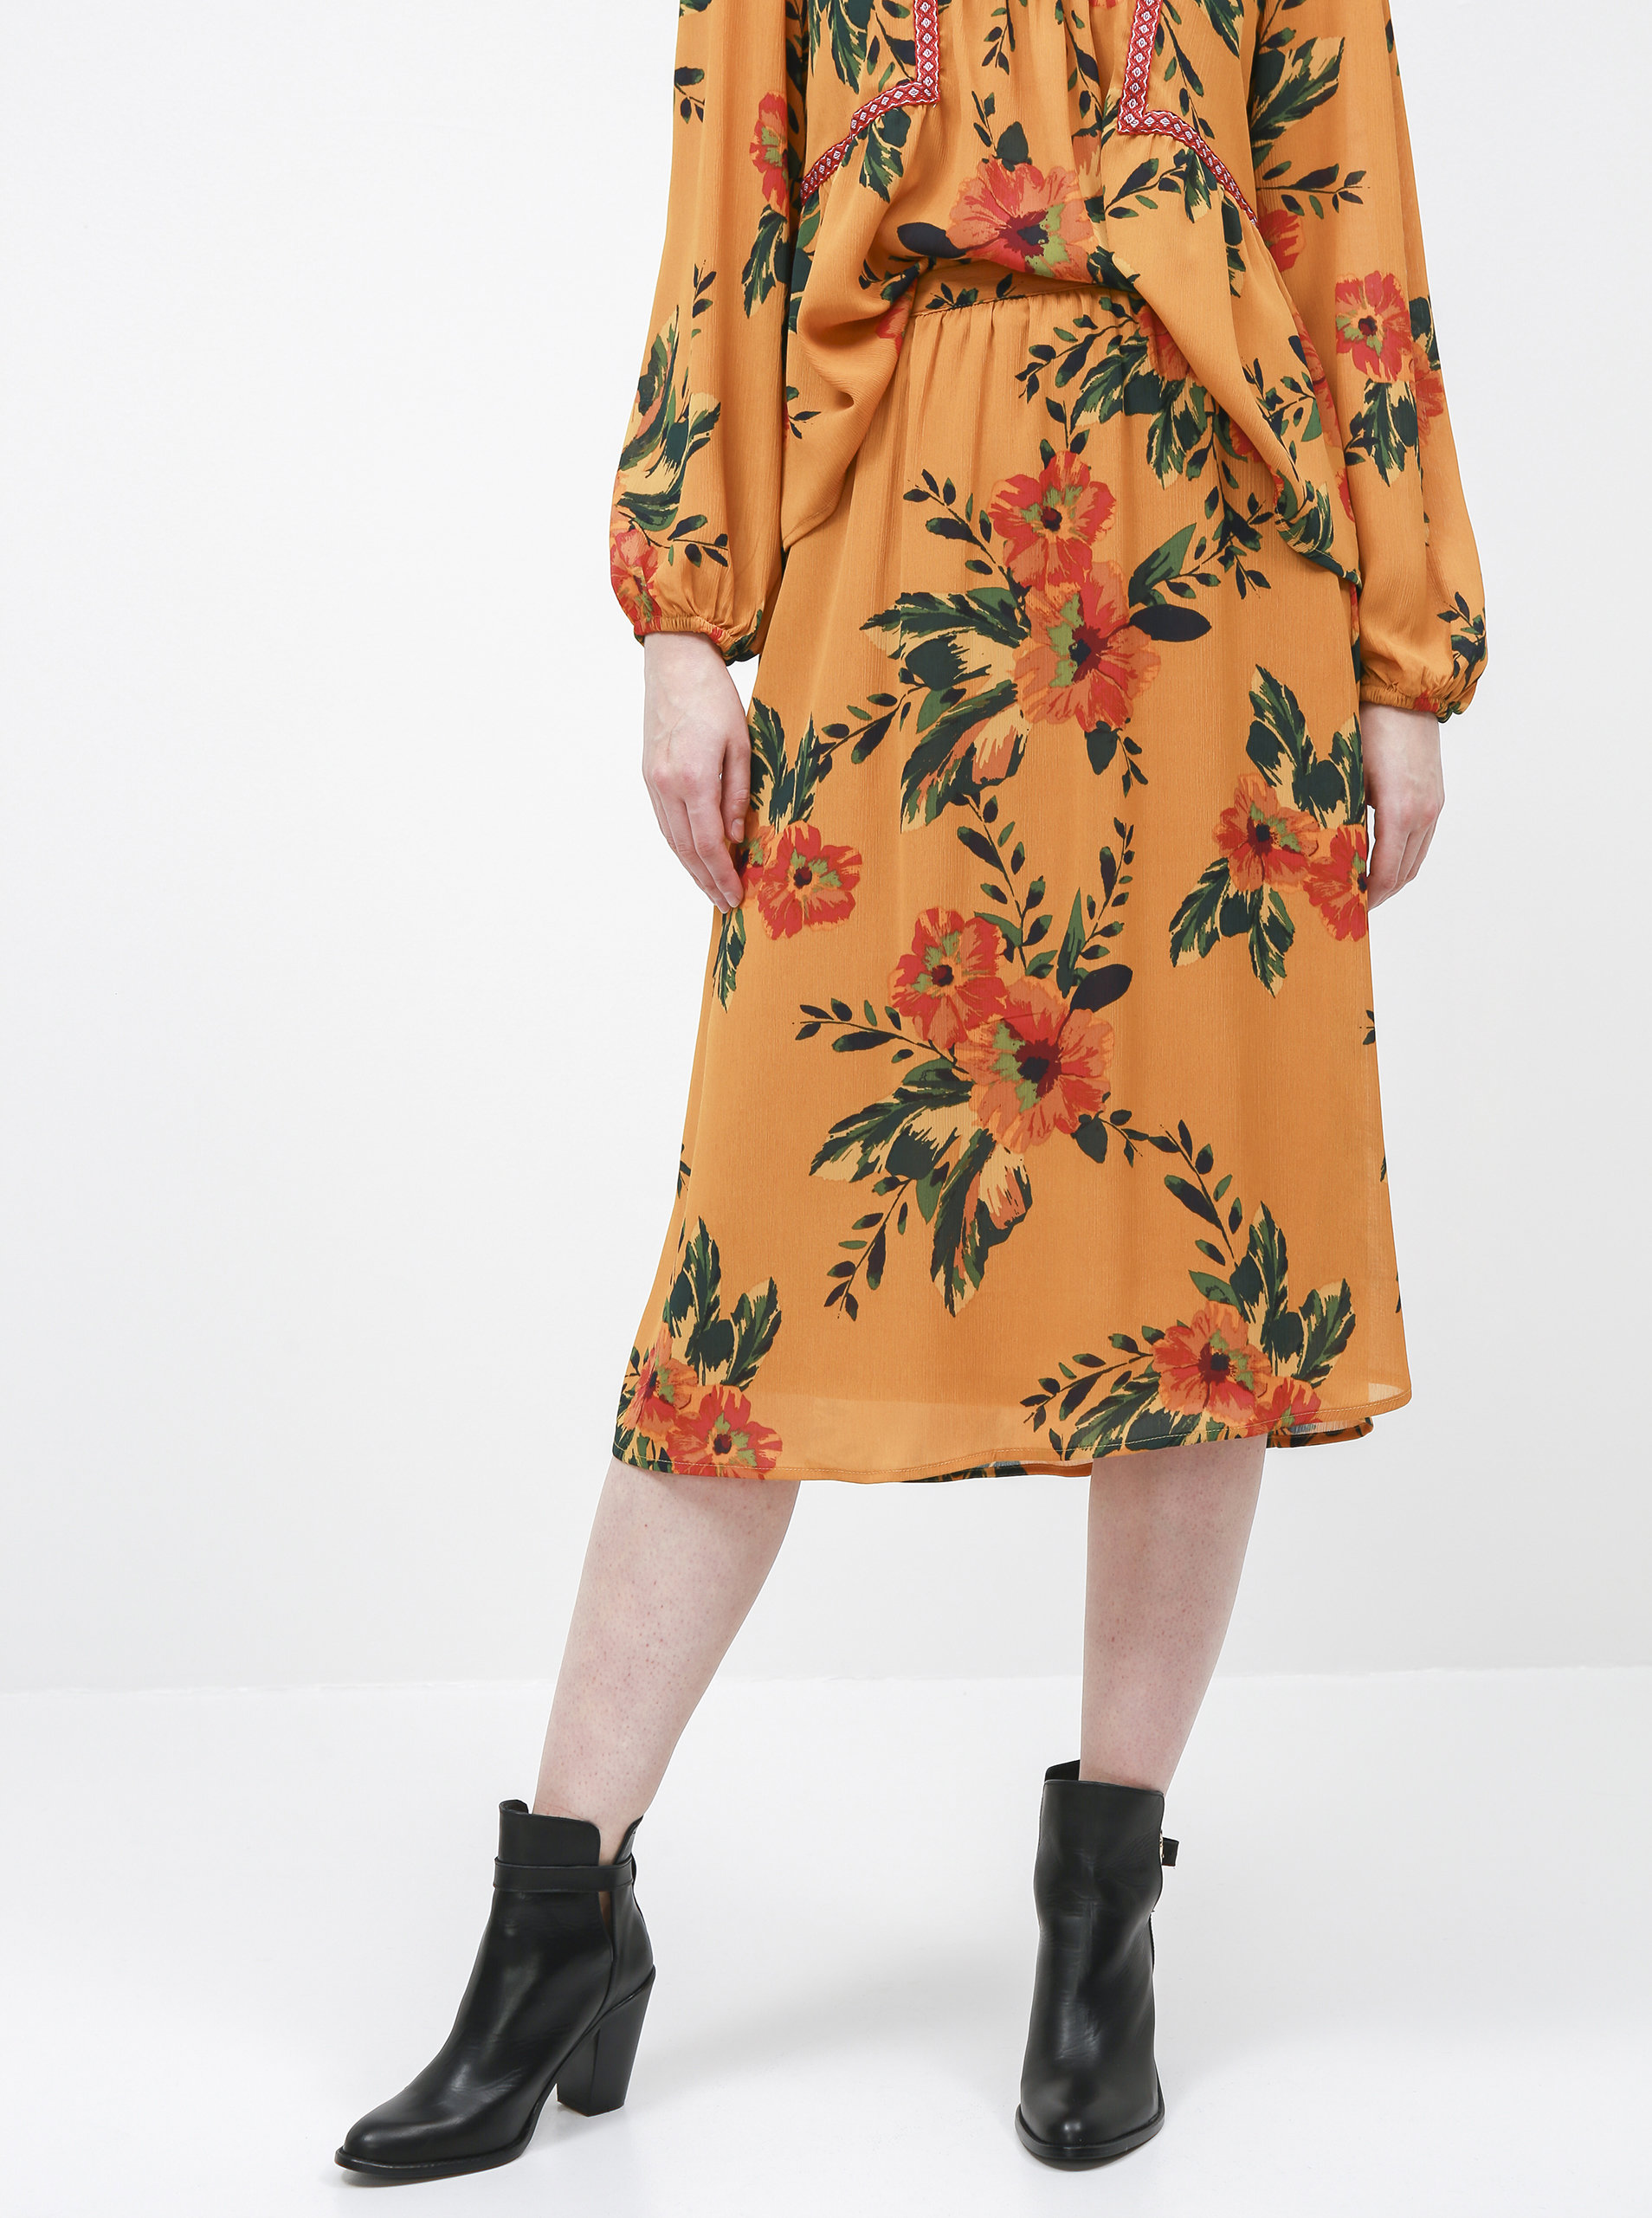 Hořčicová květovaná midi sukně Jacqueline de Yong Solis